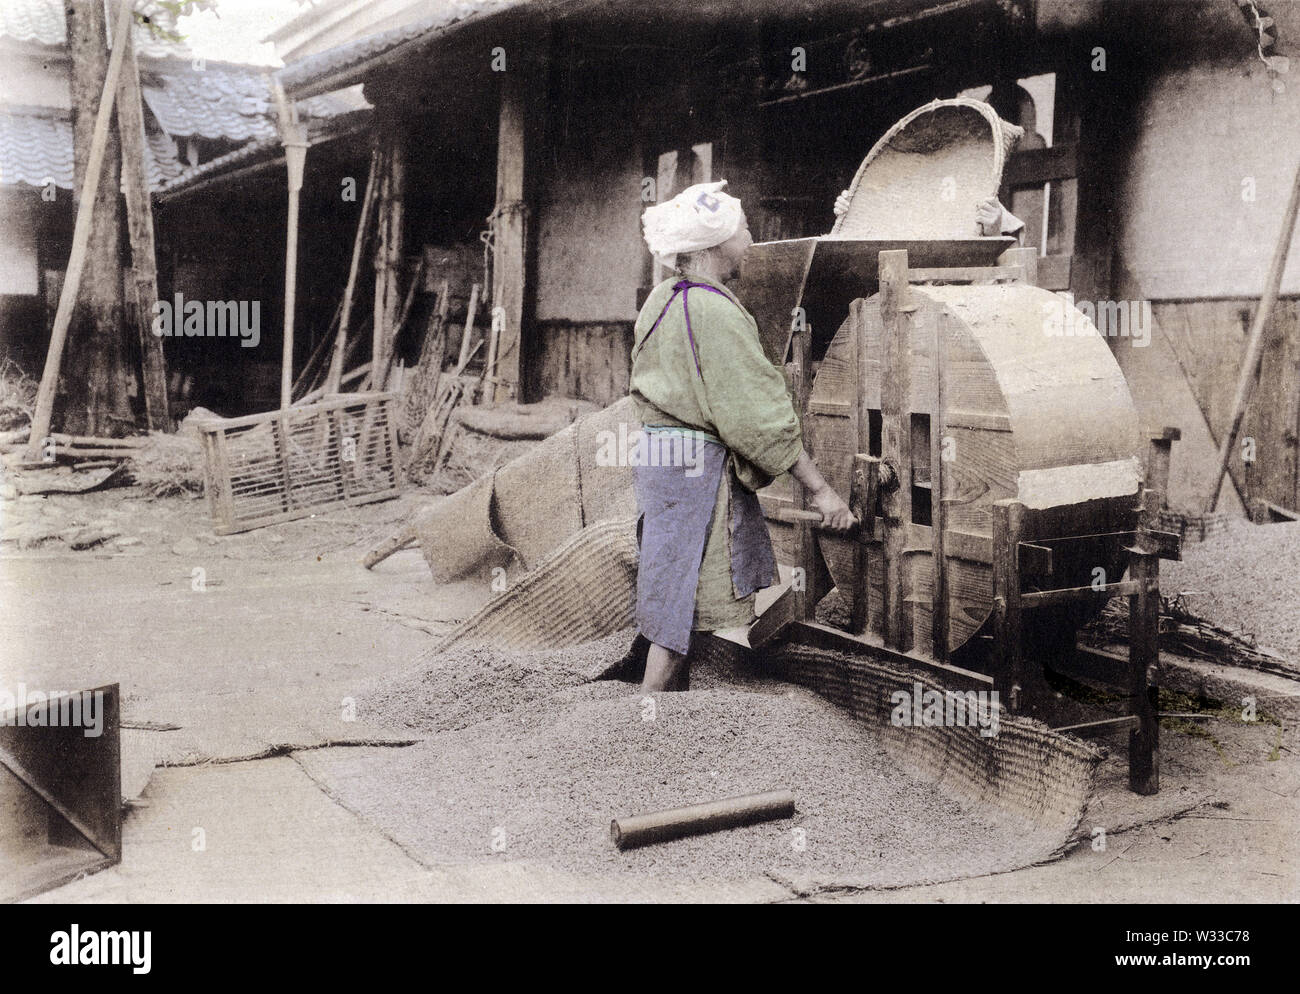 [1900s Japan - Japanische Bauern Worfeln Reis] - Anbau von Reis in Japan: Worfeln Reis mit einem toumi. Dieses Bild kommt von "den Reis in Japan", veröffentlicht im Jahr 1907 (Meiji 40) von Kobe Fotograf Teijiro Takagi. 11 von 19 20. Jahrhundert vintage Lichtdruck drucken. Stockfoto